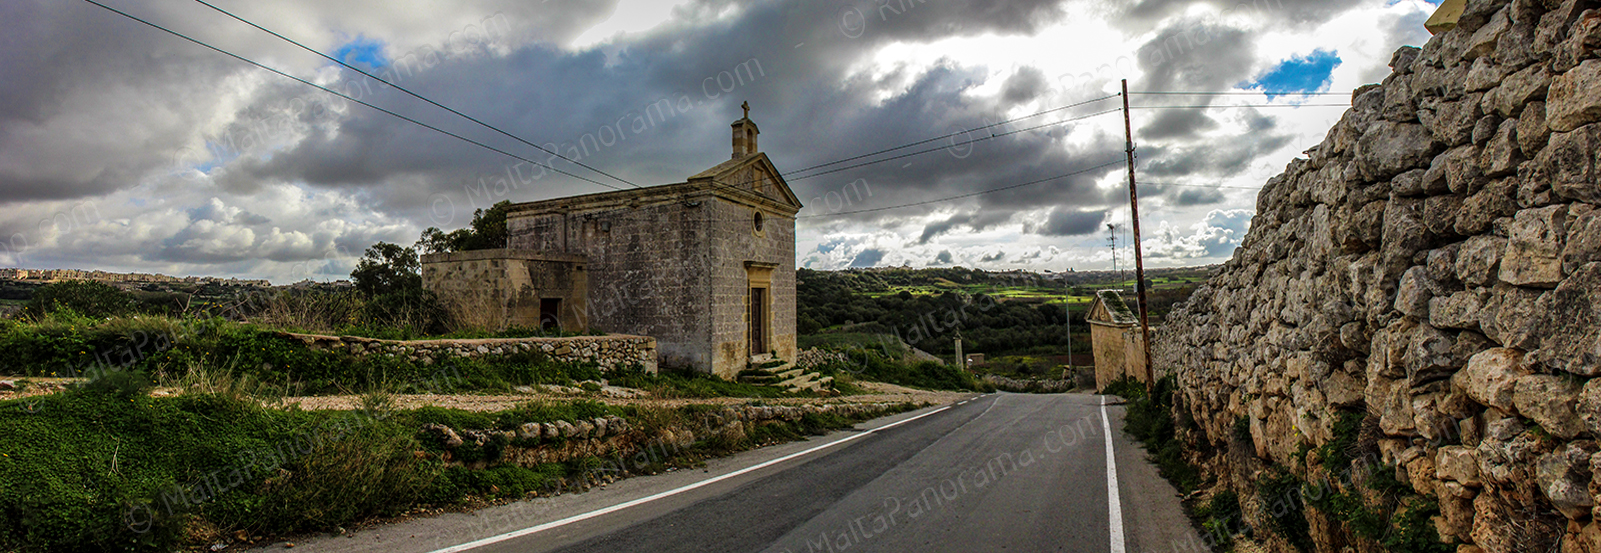 wayside chapel in Fiddien Malta